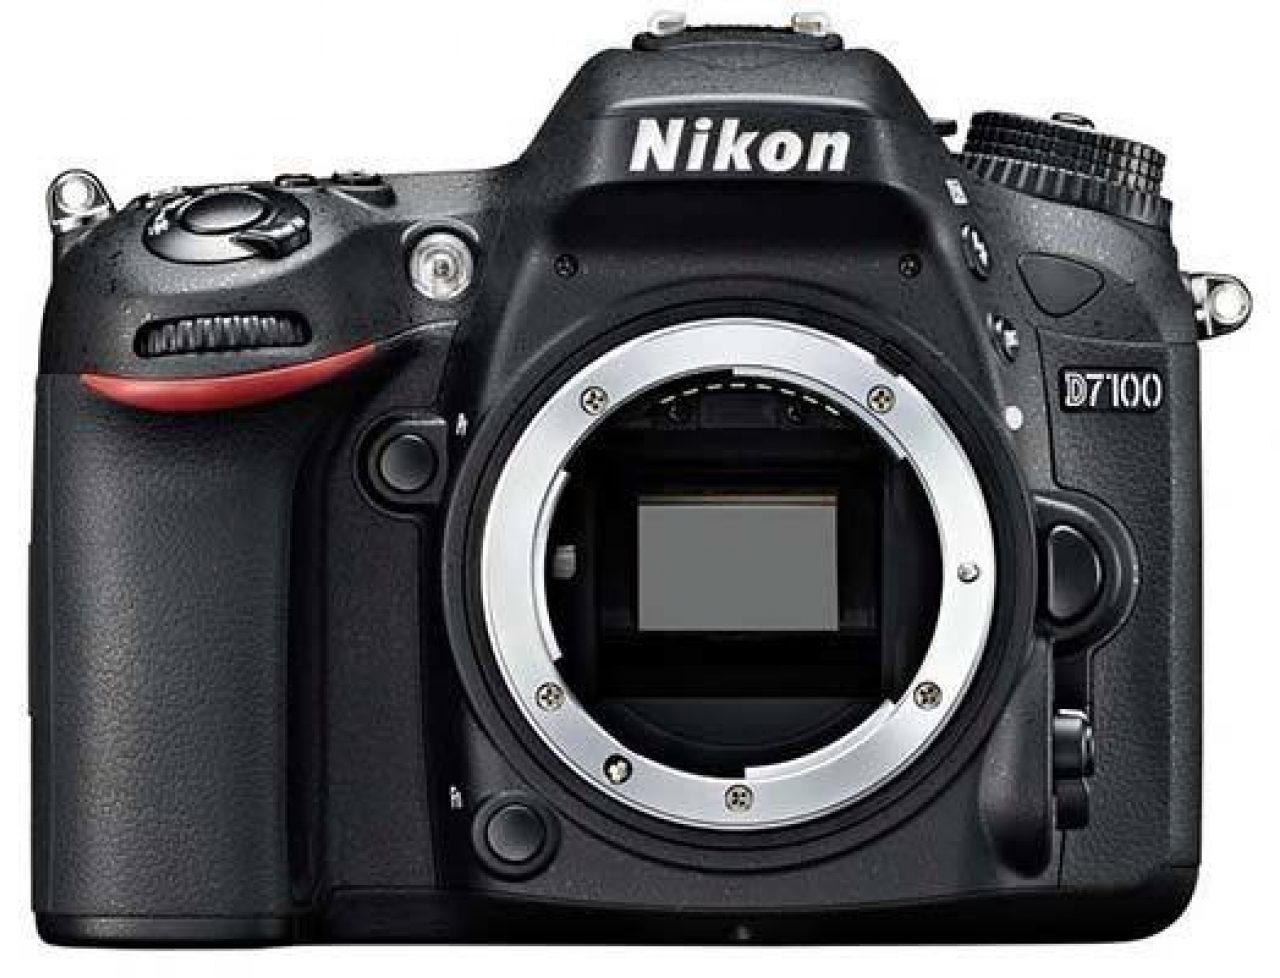 Nikon D7100 Review Photography Blog, Best Landscape Lenses For Nikon D7100